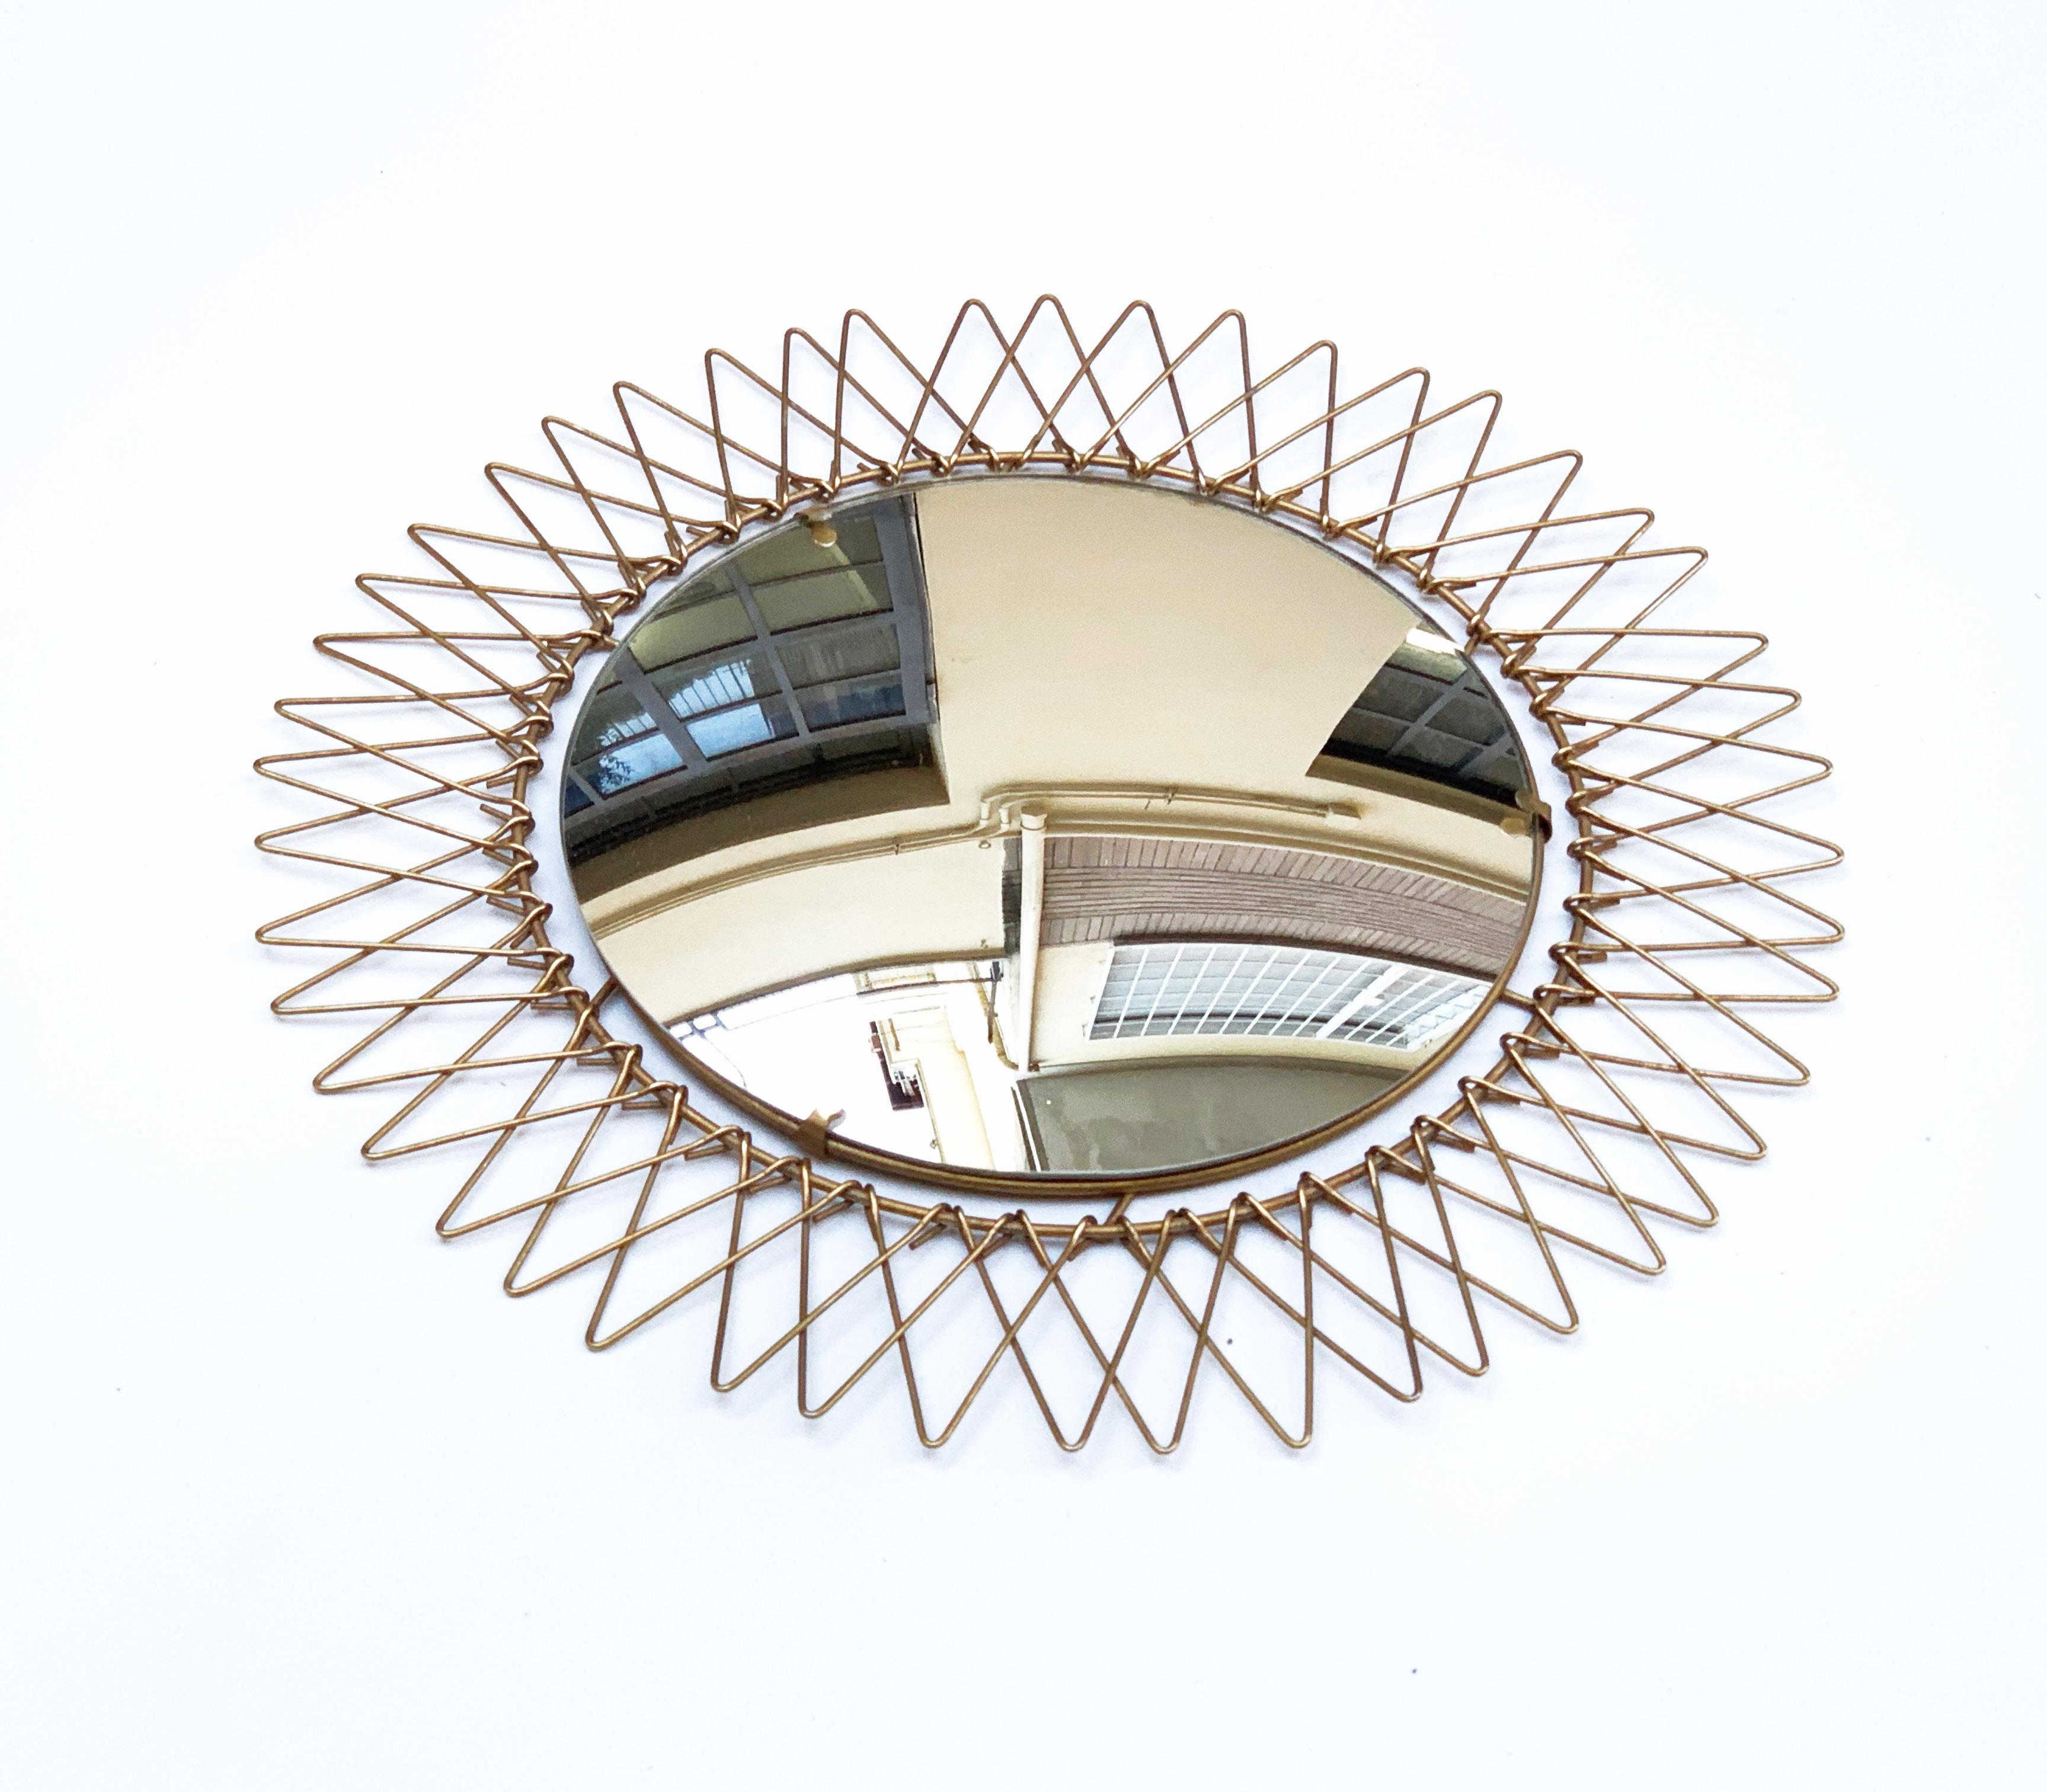 Elegant miroir français en forme de soleil, produit en France à la fin des années 1970. 

Cet étonnant miroir mural rond a un cadre en fil de laiton, réglable vers l'intérieur et l'extérieur.

Une pièce splendide qui donnera de la lumière et de